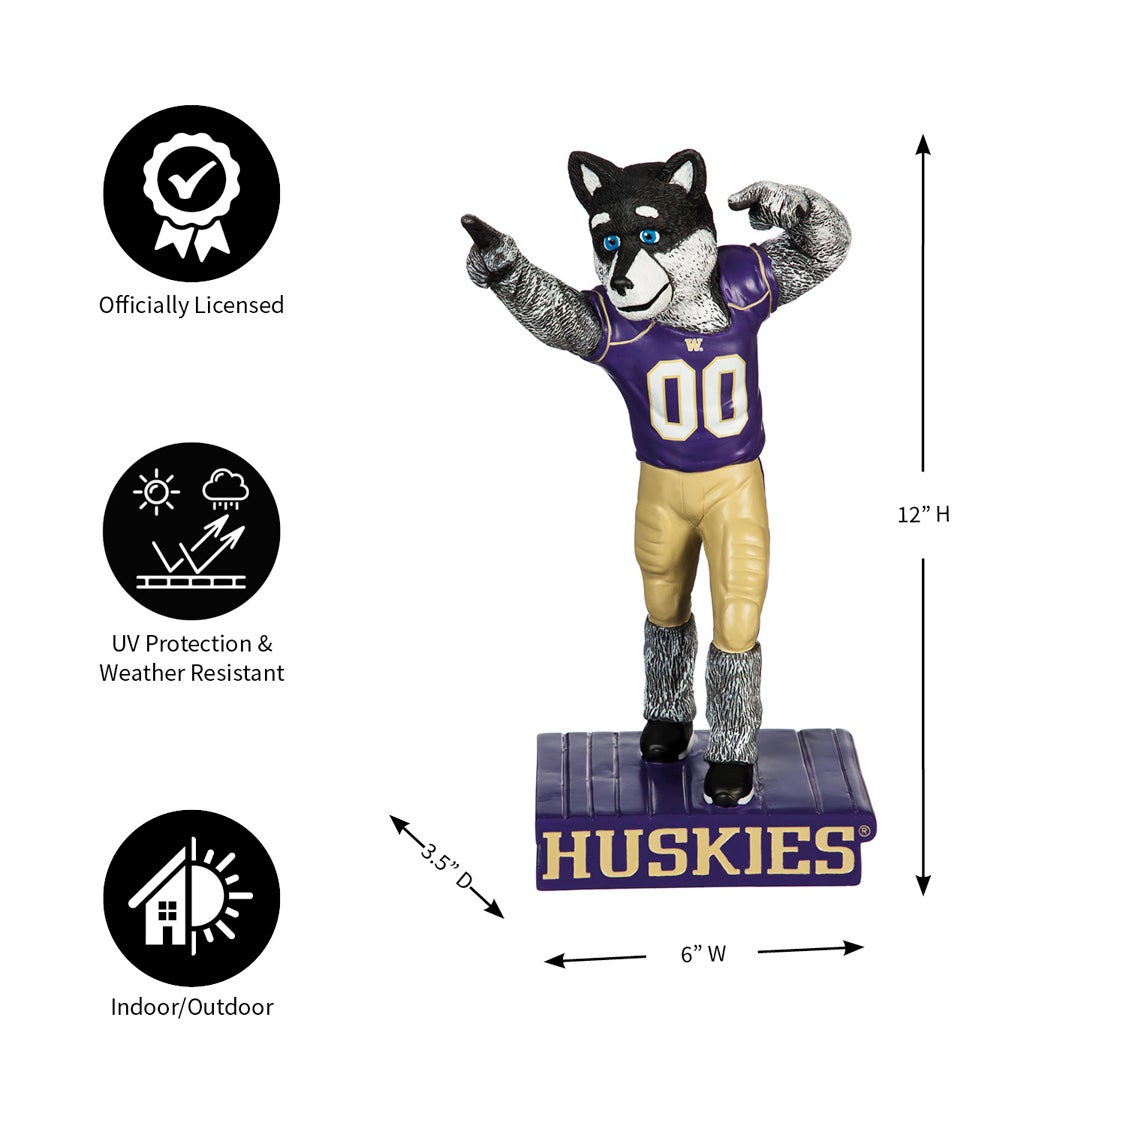 University of Washington Mascot Statue